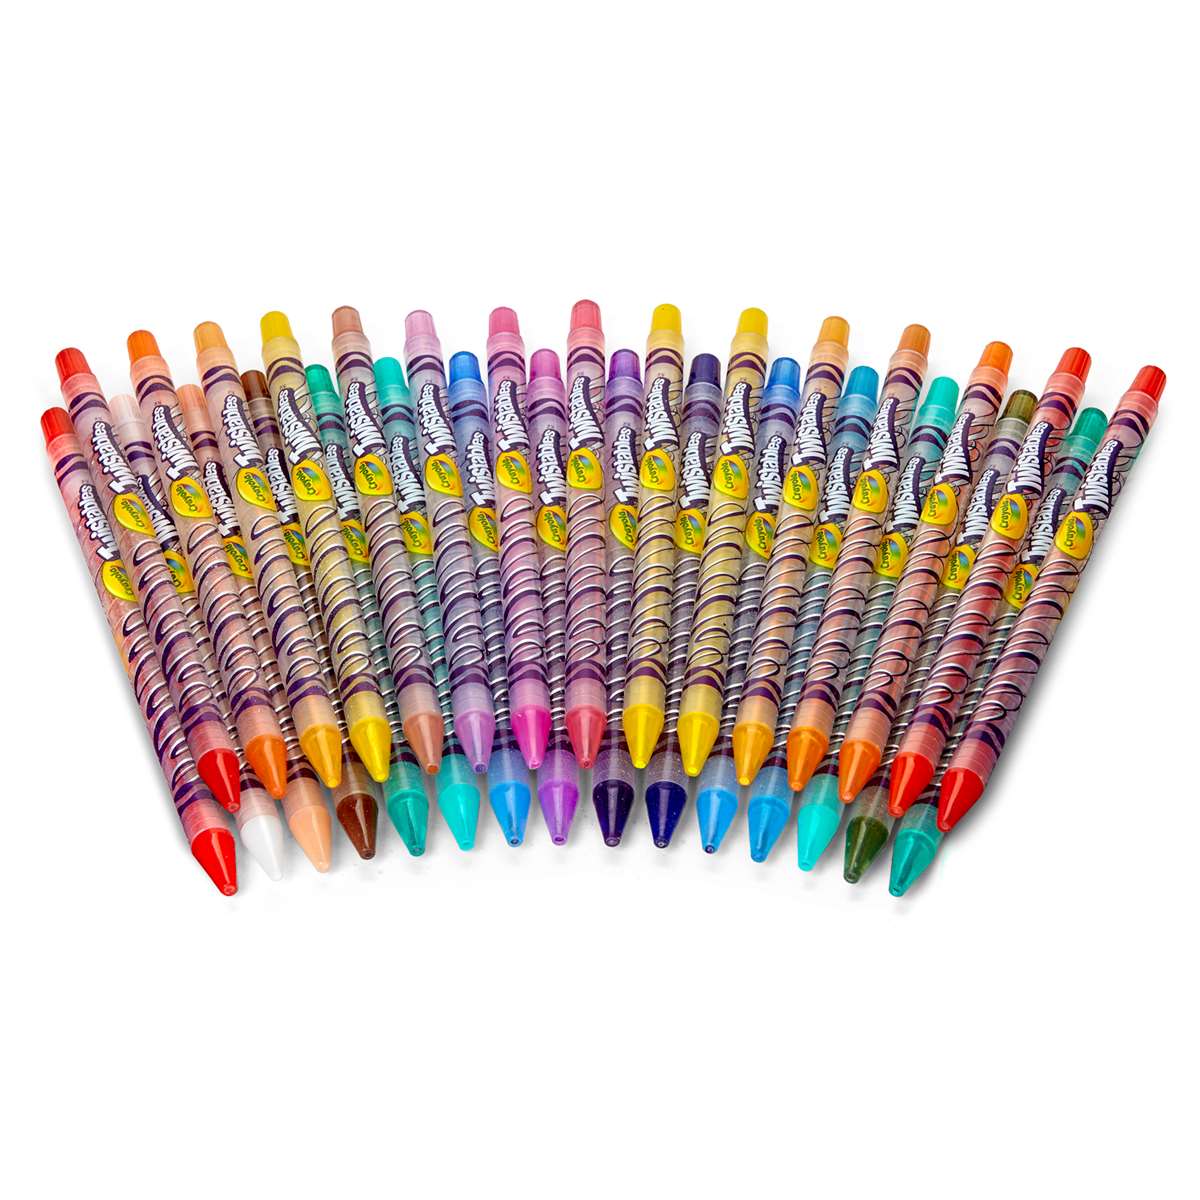 Crayola Twistables 30 Ct Colored Pencils by Crayola: Colored